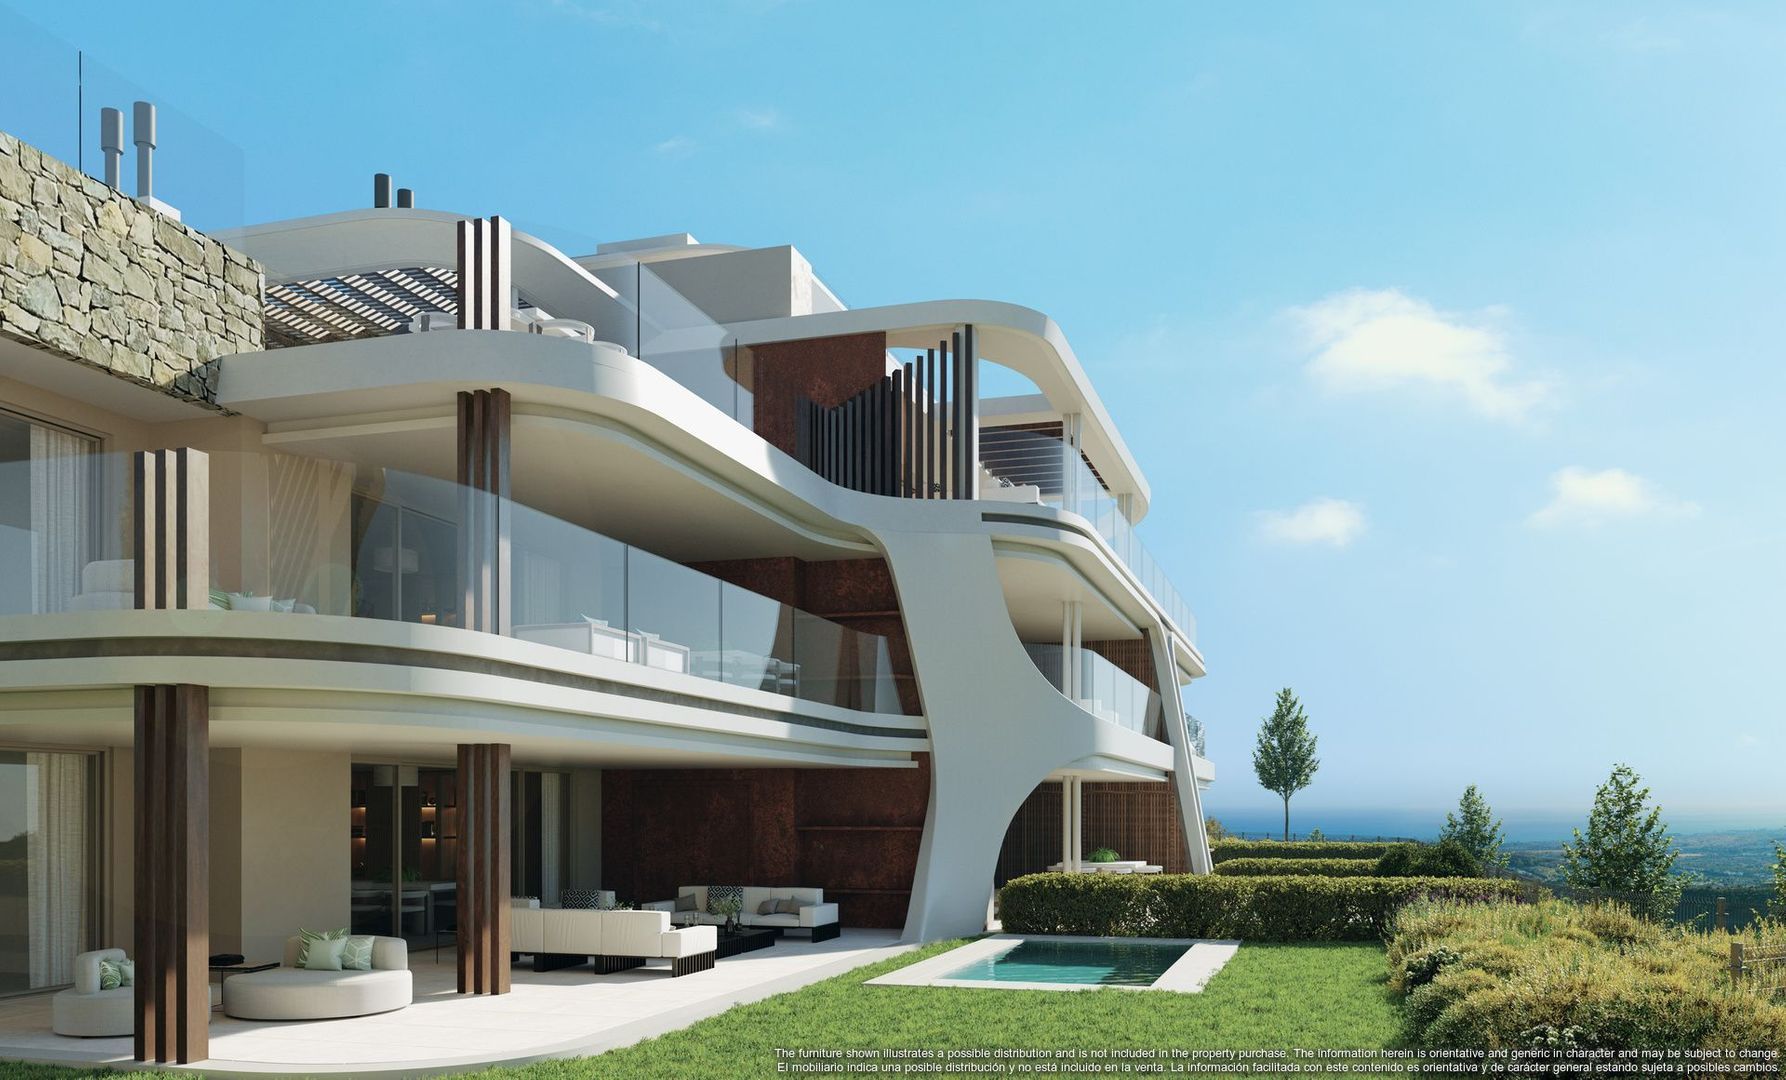 This latest development raises the bar for luxury living in Marbella, Benahavis foto-8